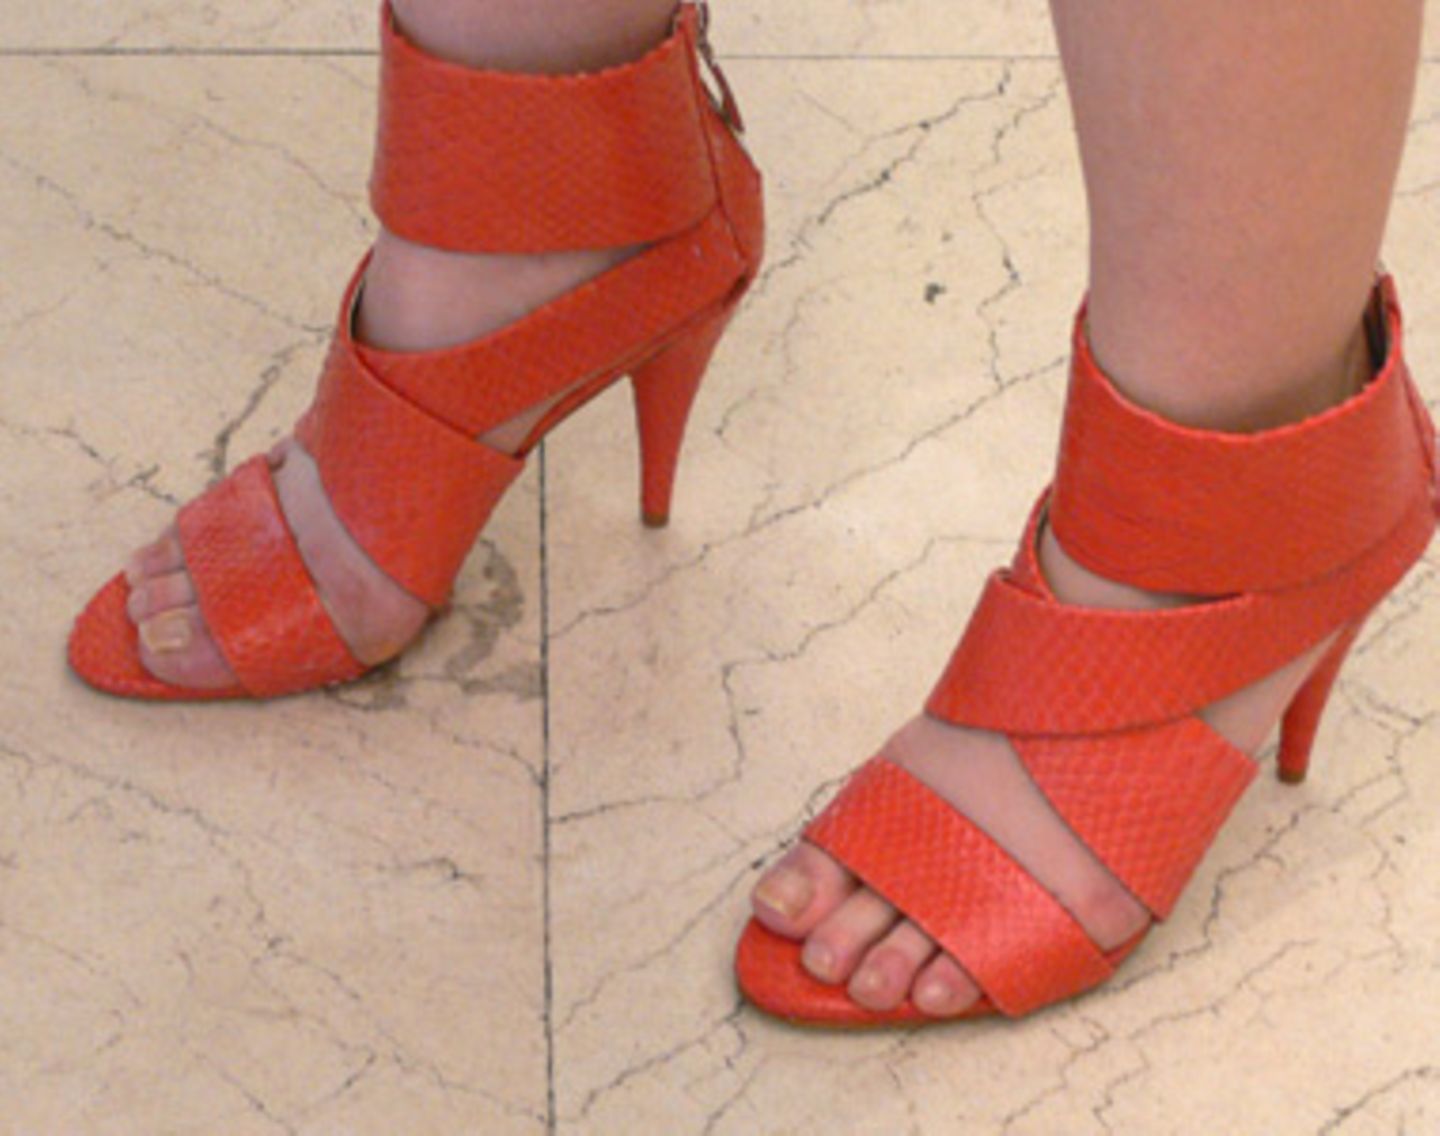 Diese tollen Highheels in der Sommer-Trendfarbe Orange schmücken die Füße von Hannah, 26, einer Studentin aus Frankfurt. Ihre Schuhe hat sie von Zara.